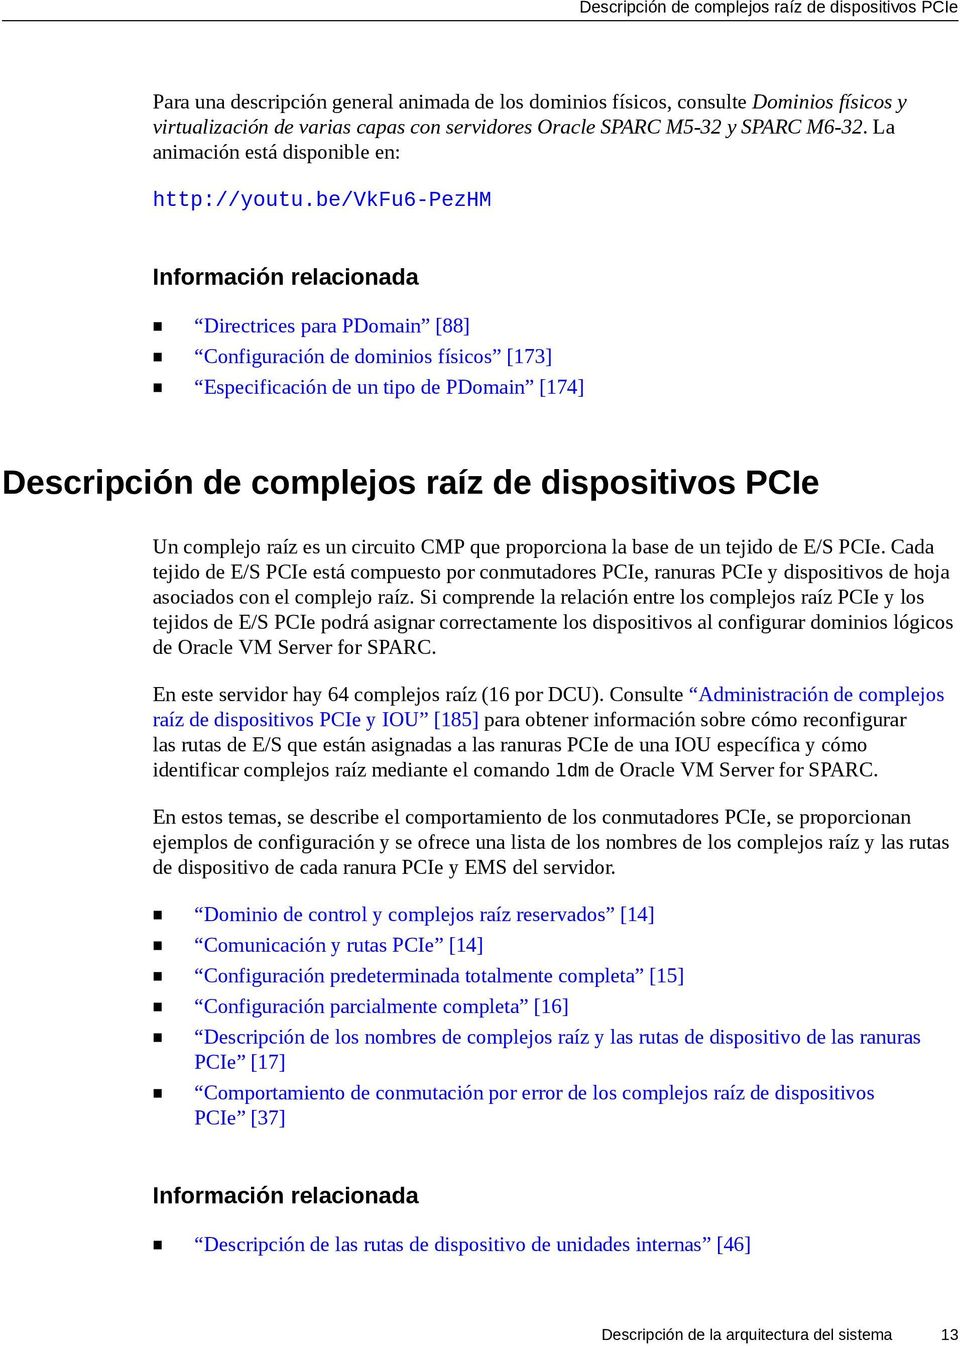 be/vkfu6-pezhm Directrices para PDomain [88] Configuración de dominios físicos [173] Especificación de un tipo de PDomain [174] Descripción de complejos raíz de dispositivos PCIe Un complejo raíz es